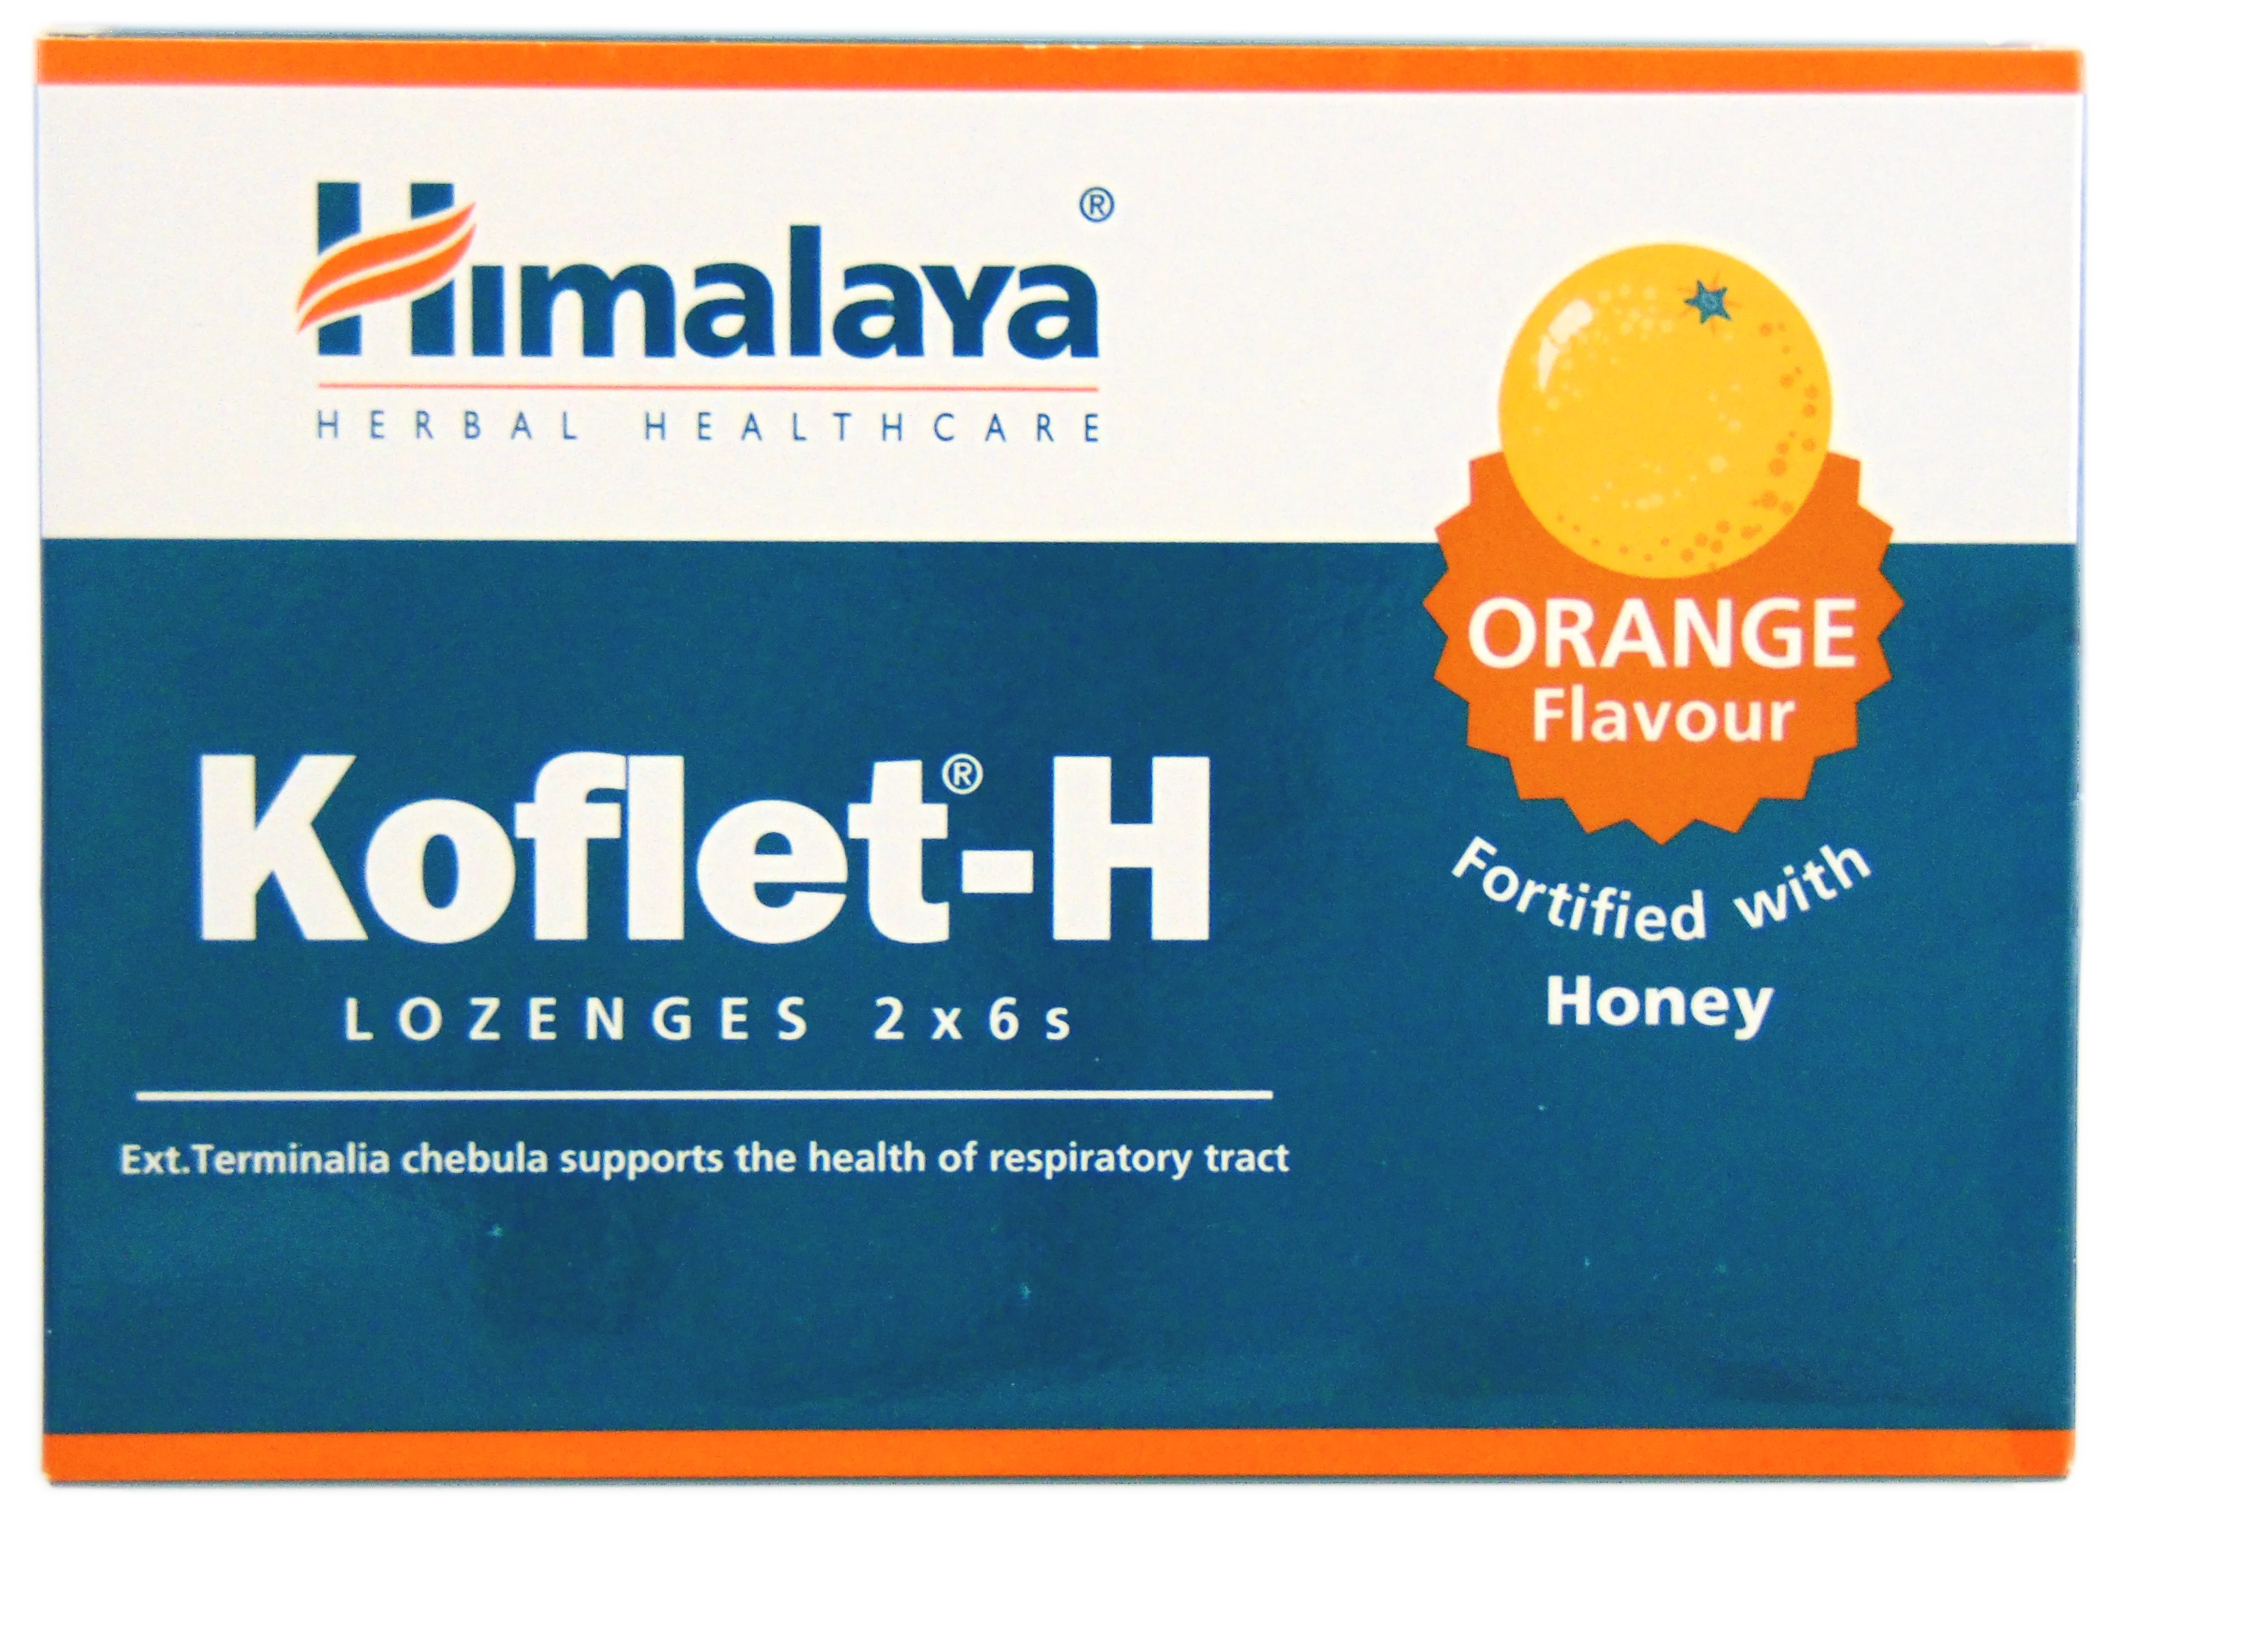 Dureri de gat - Koflet-H cu aroma de portocale x 12 comprimate, medik-on.ro